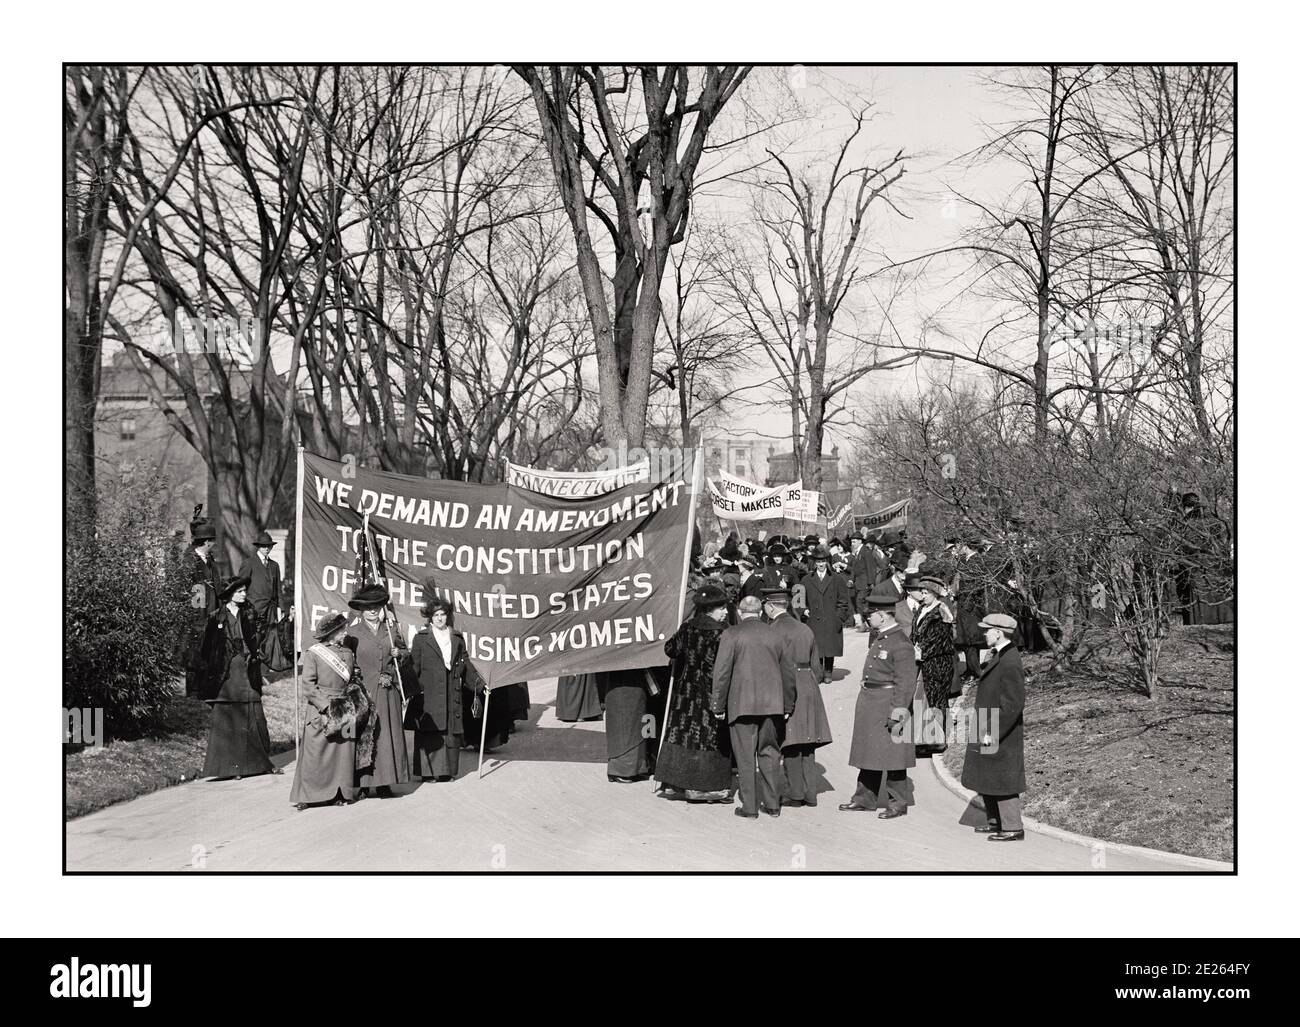 1914 le mouvement suffragette, le suffrage des femmes, sous la bannière «votes pour les femmes», qui a commencé au milieu du XIXe siècle, a culminé avec la victoire avec la ratification du 19e Amendement à la Constitution le 19 août 1920. SUFFRAGE CONNECTICUT ÉTATS-UNIS 1914 Banque D'Images